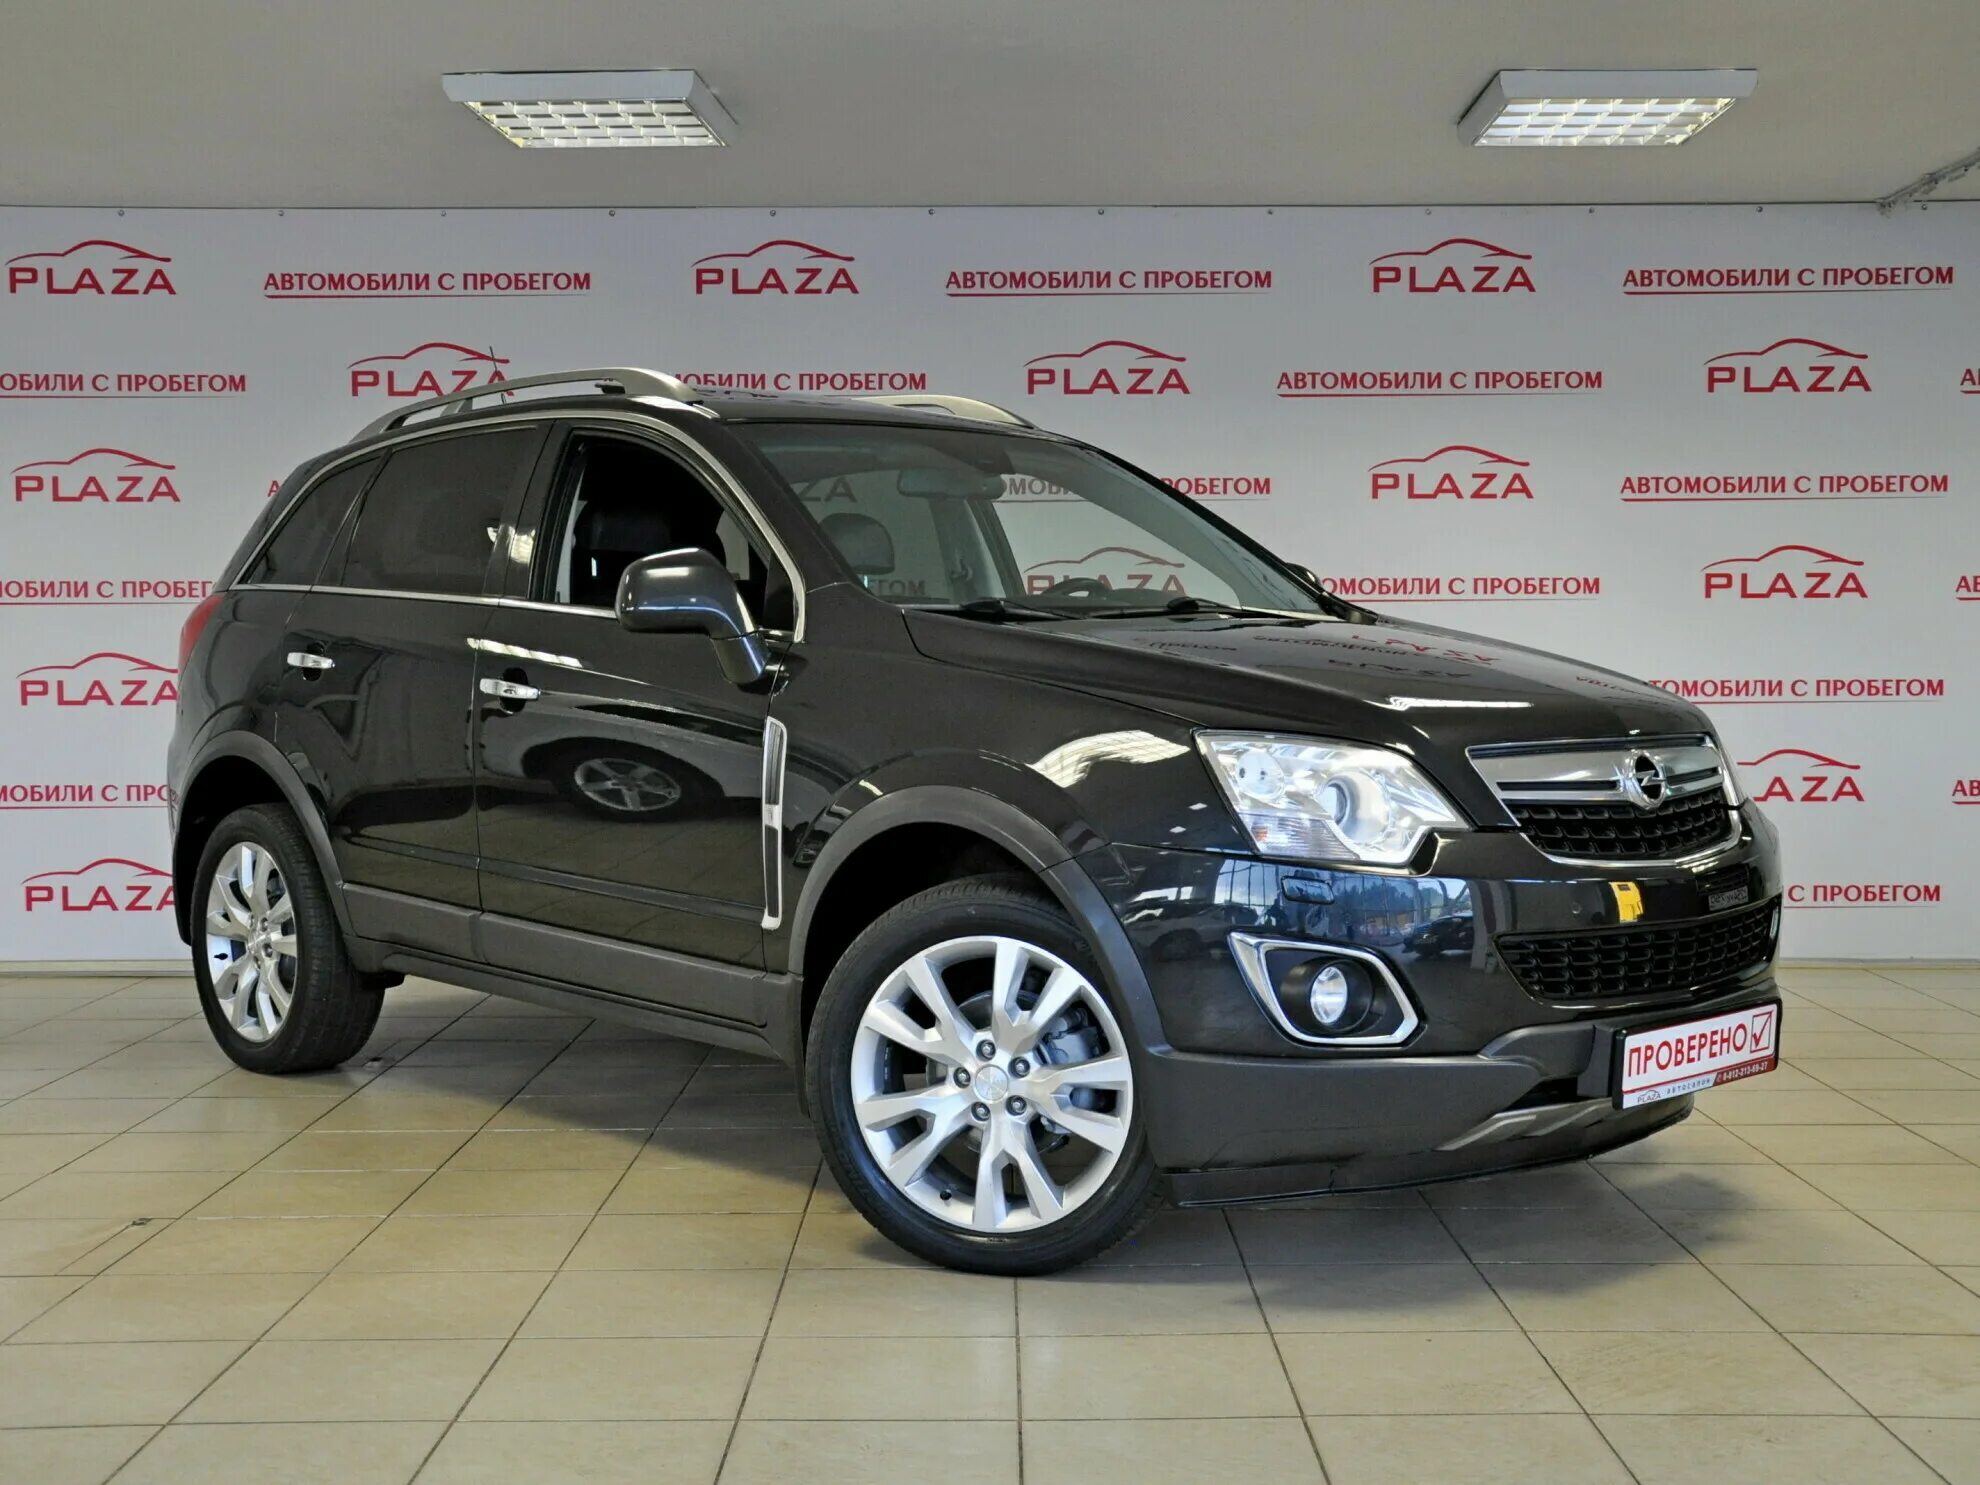 Купить автомобиль в спб. Opel Antara 3.2. Opel Antara 3.2 2011. Опель Антара 2011. Опель Антара 3.2 АТ 2009.